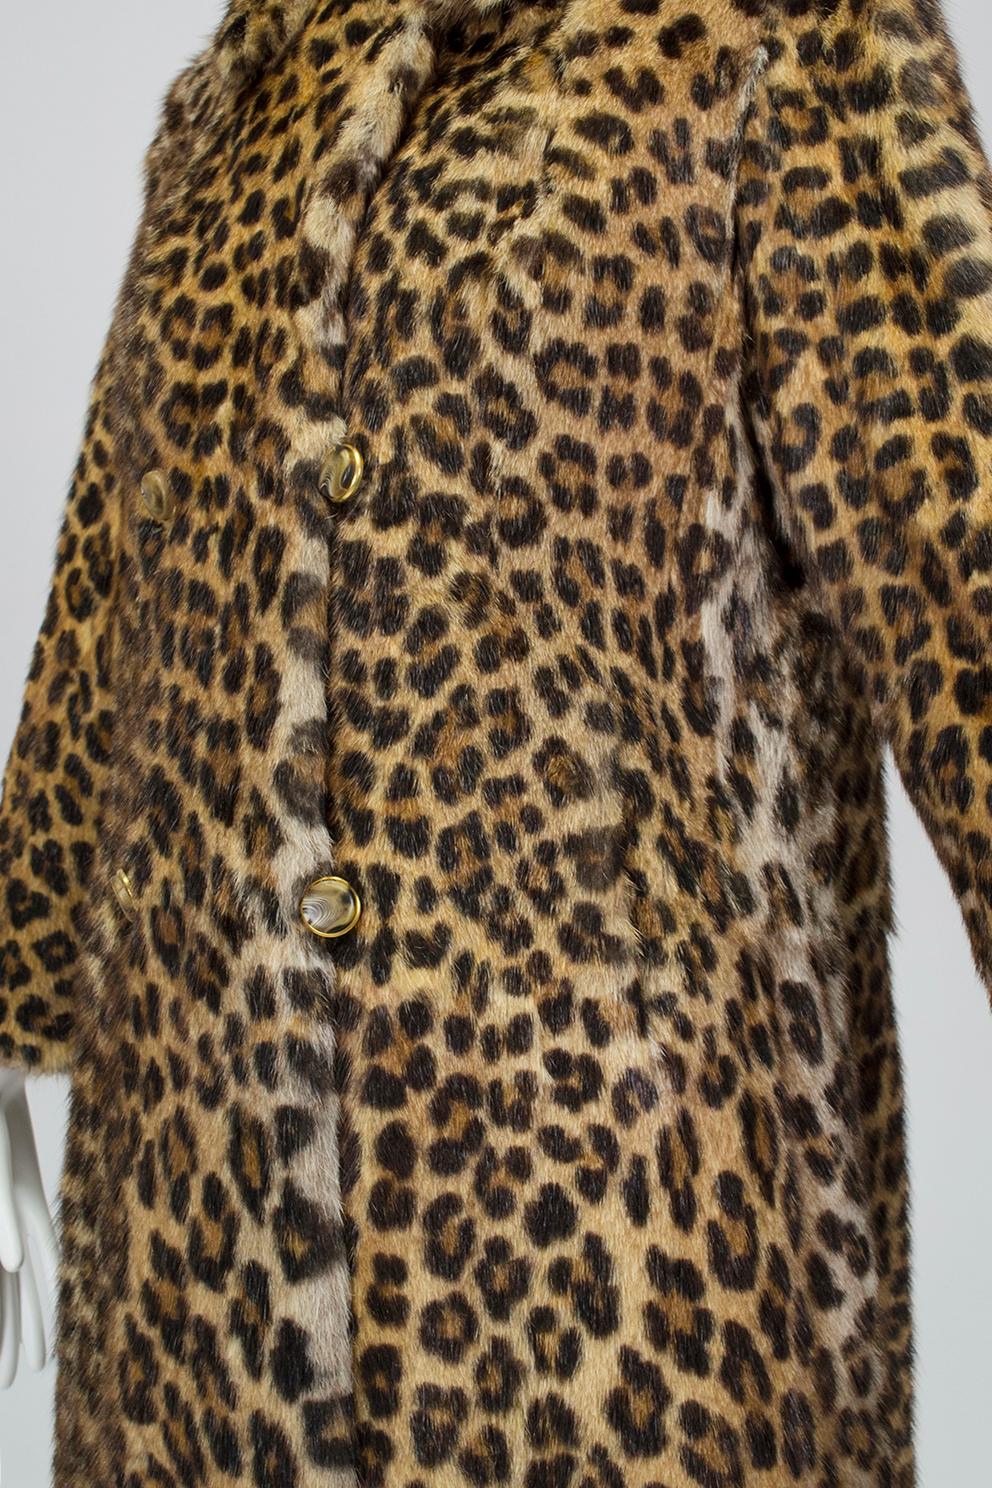 real leopard fur coat